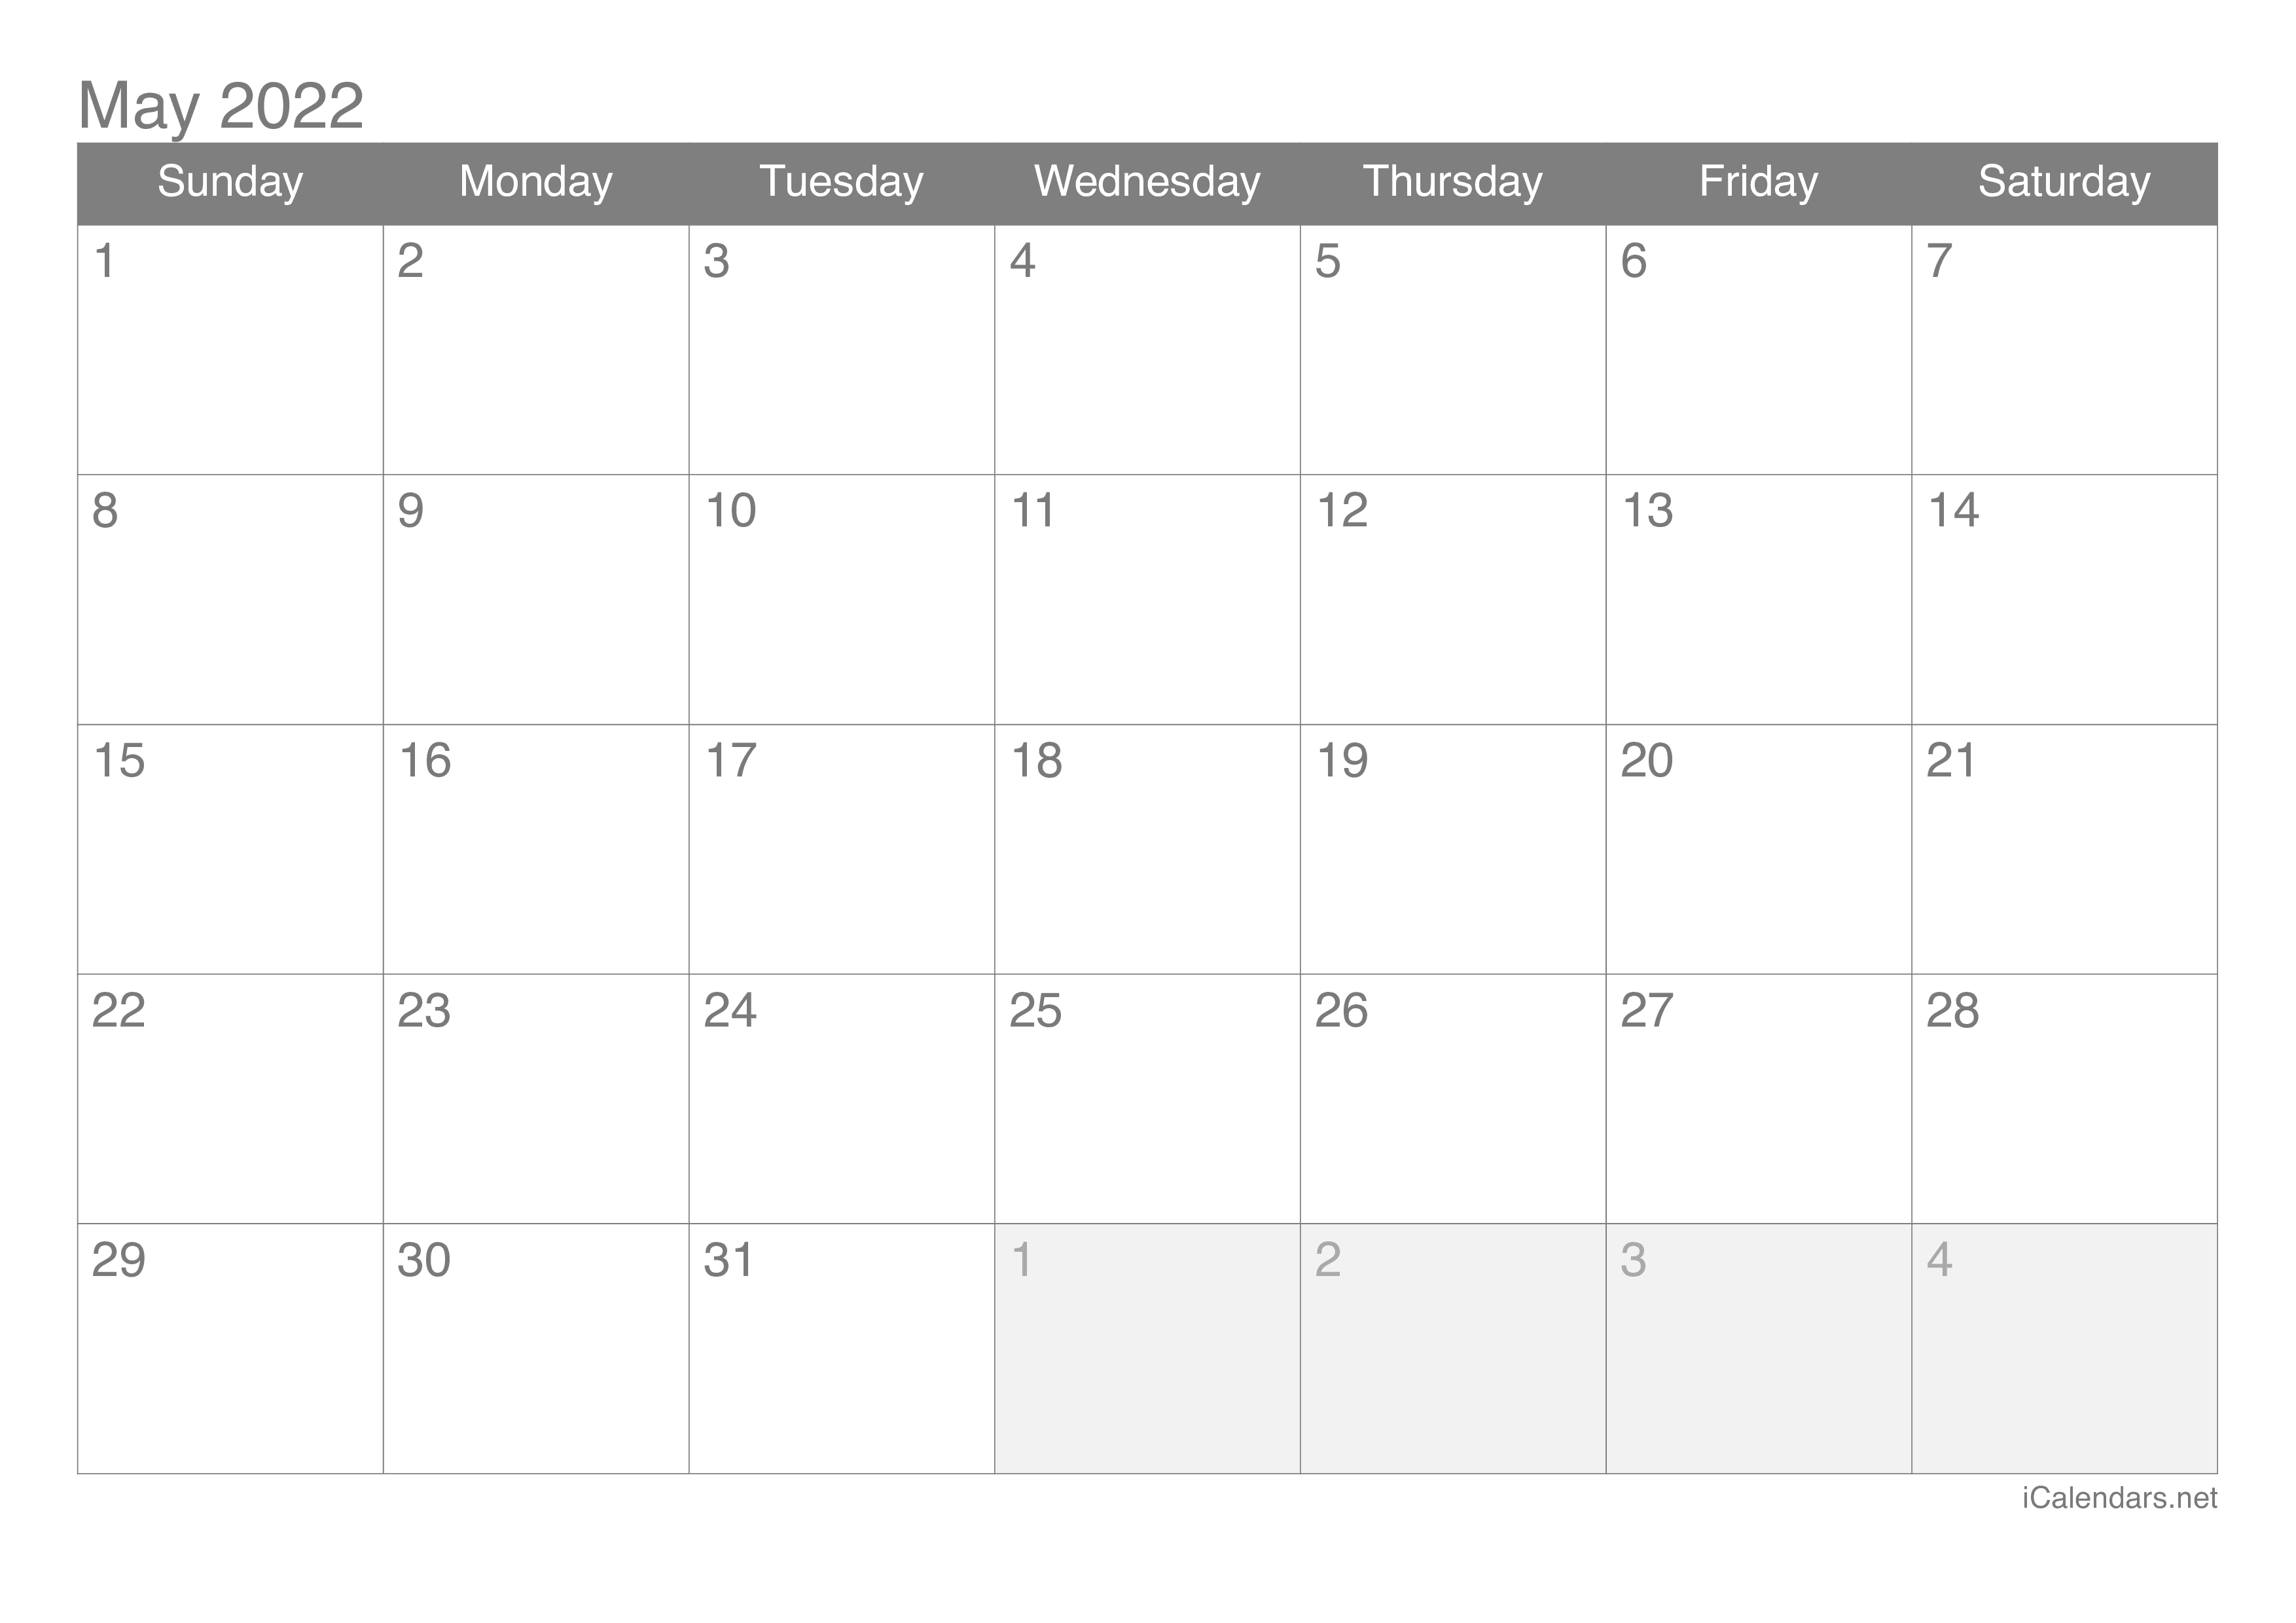 2022 May Calendar